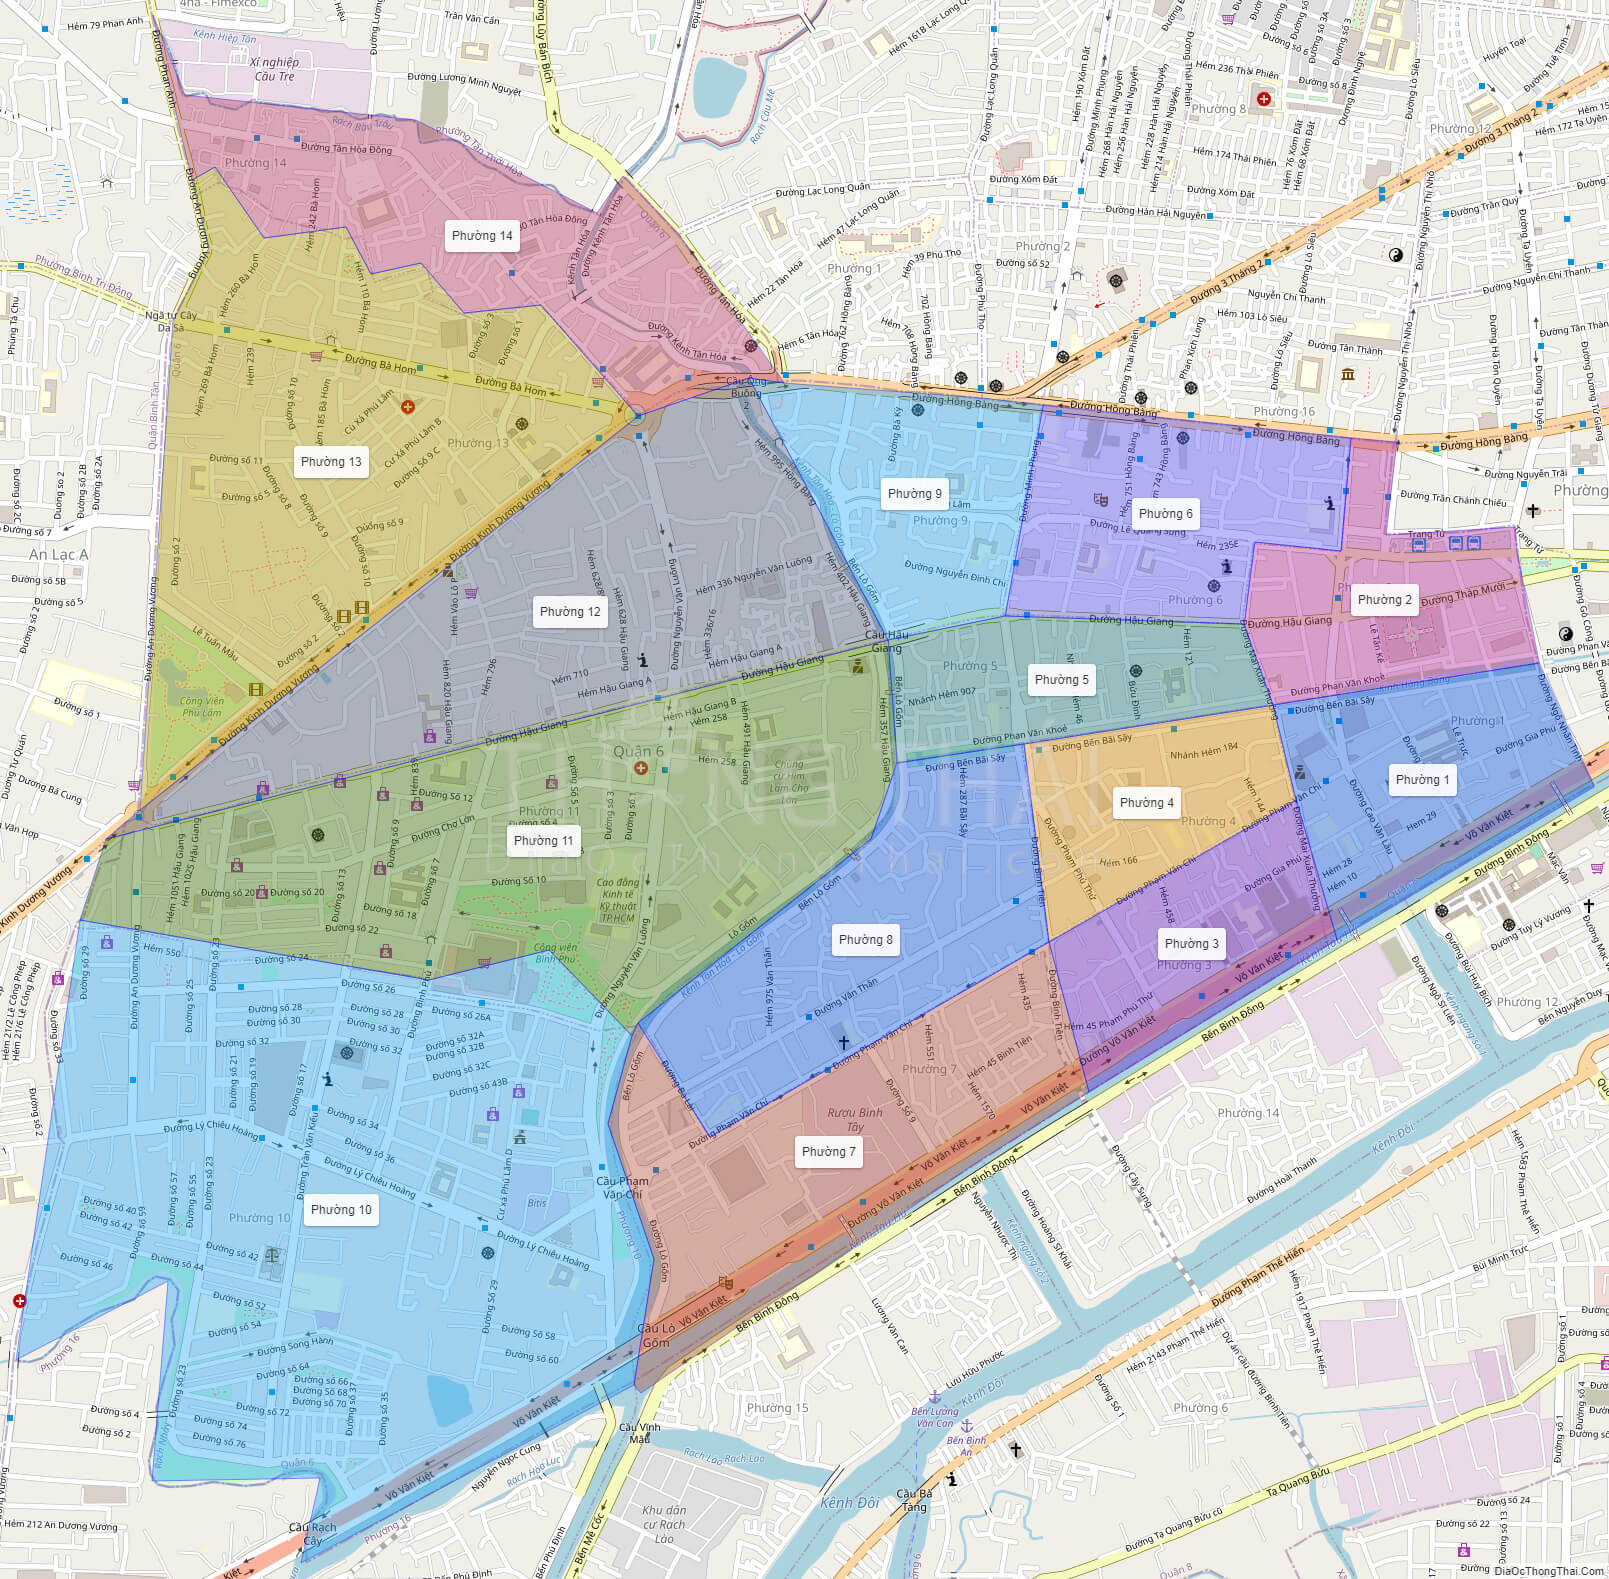 Bản đồ quận 6 TPHCM đã được cập nhật và cải tiến, giúp bạn hiểu rõ hơn về khu vực này. Hãy xem hình ảnh để tìm hiểu về các công trình, trung tâm thương mại và các khu vui chơi giải trí mới nhất tại quận 6.